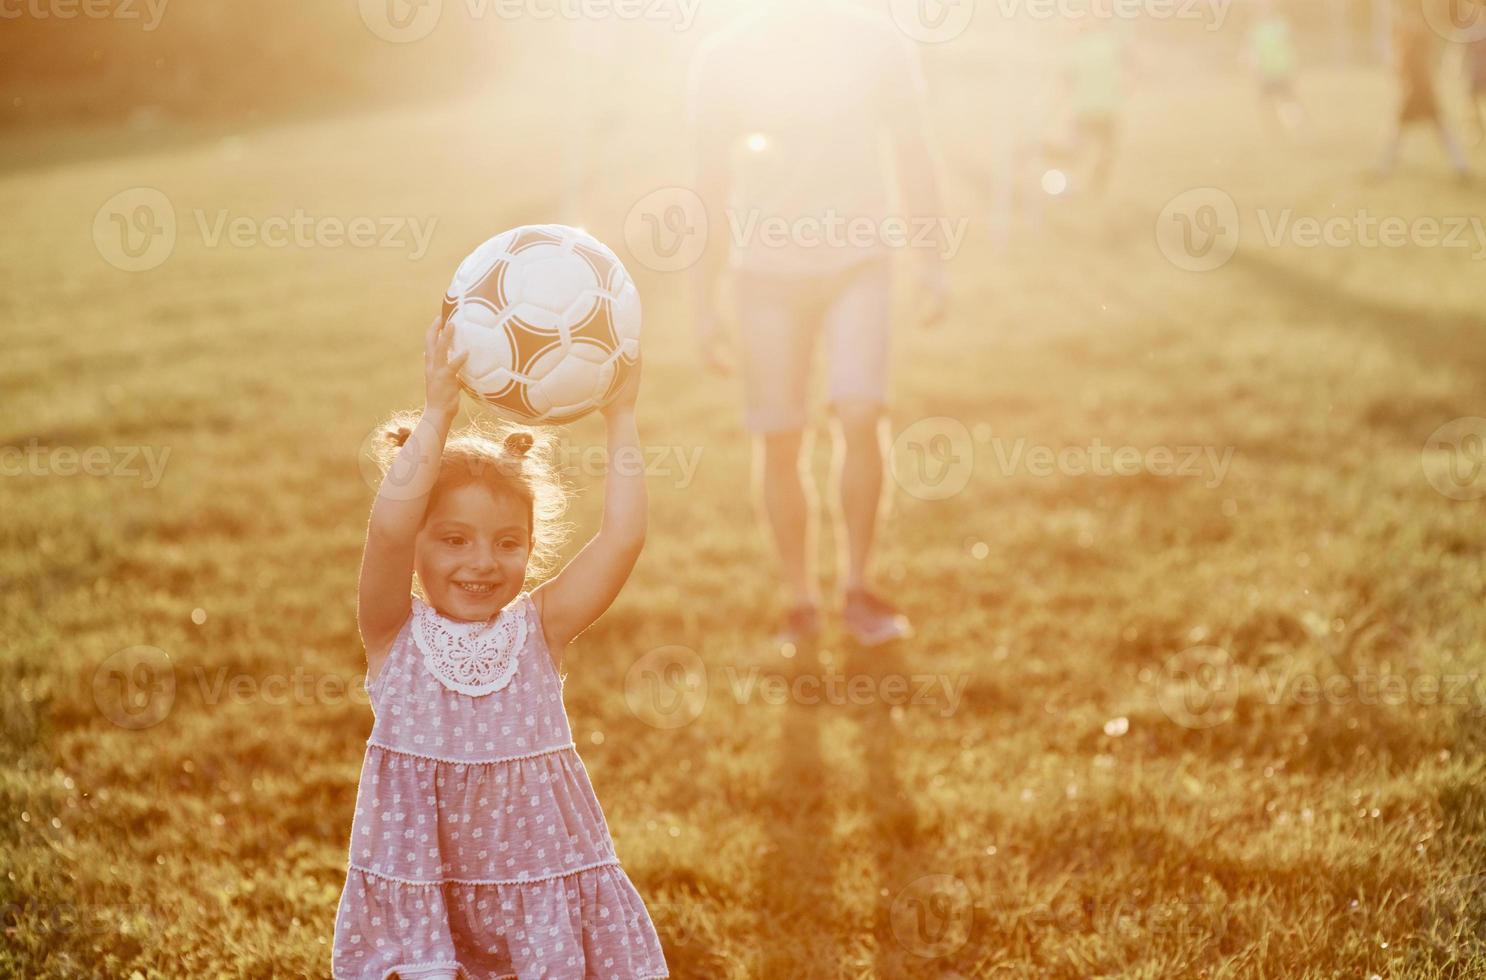 jolie petite fille tombe amoureuse du football. le passe-temps de papa peut créer de la bonne humeur pour deux d'entre eux photo